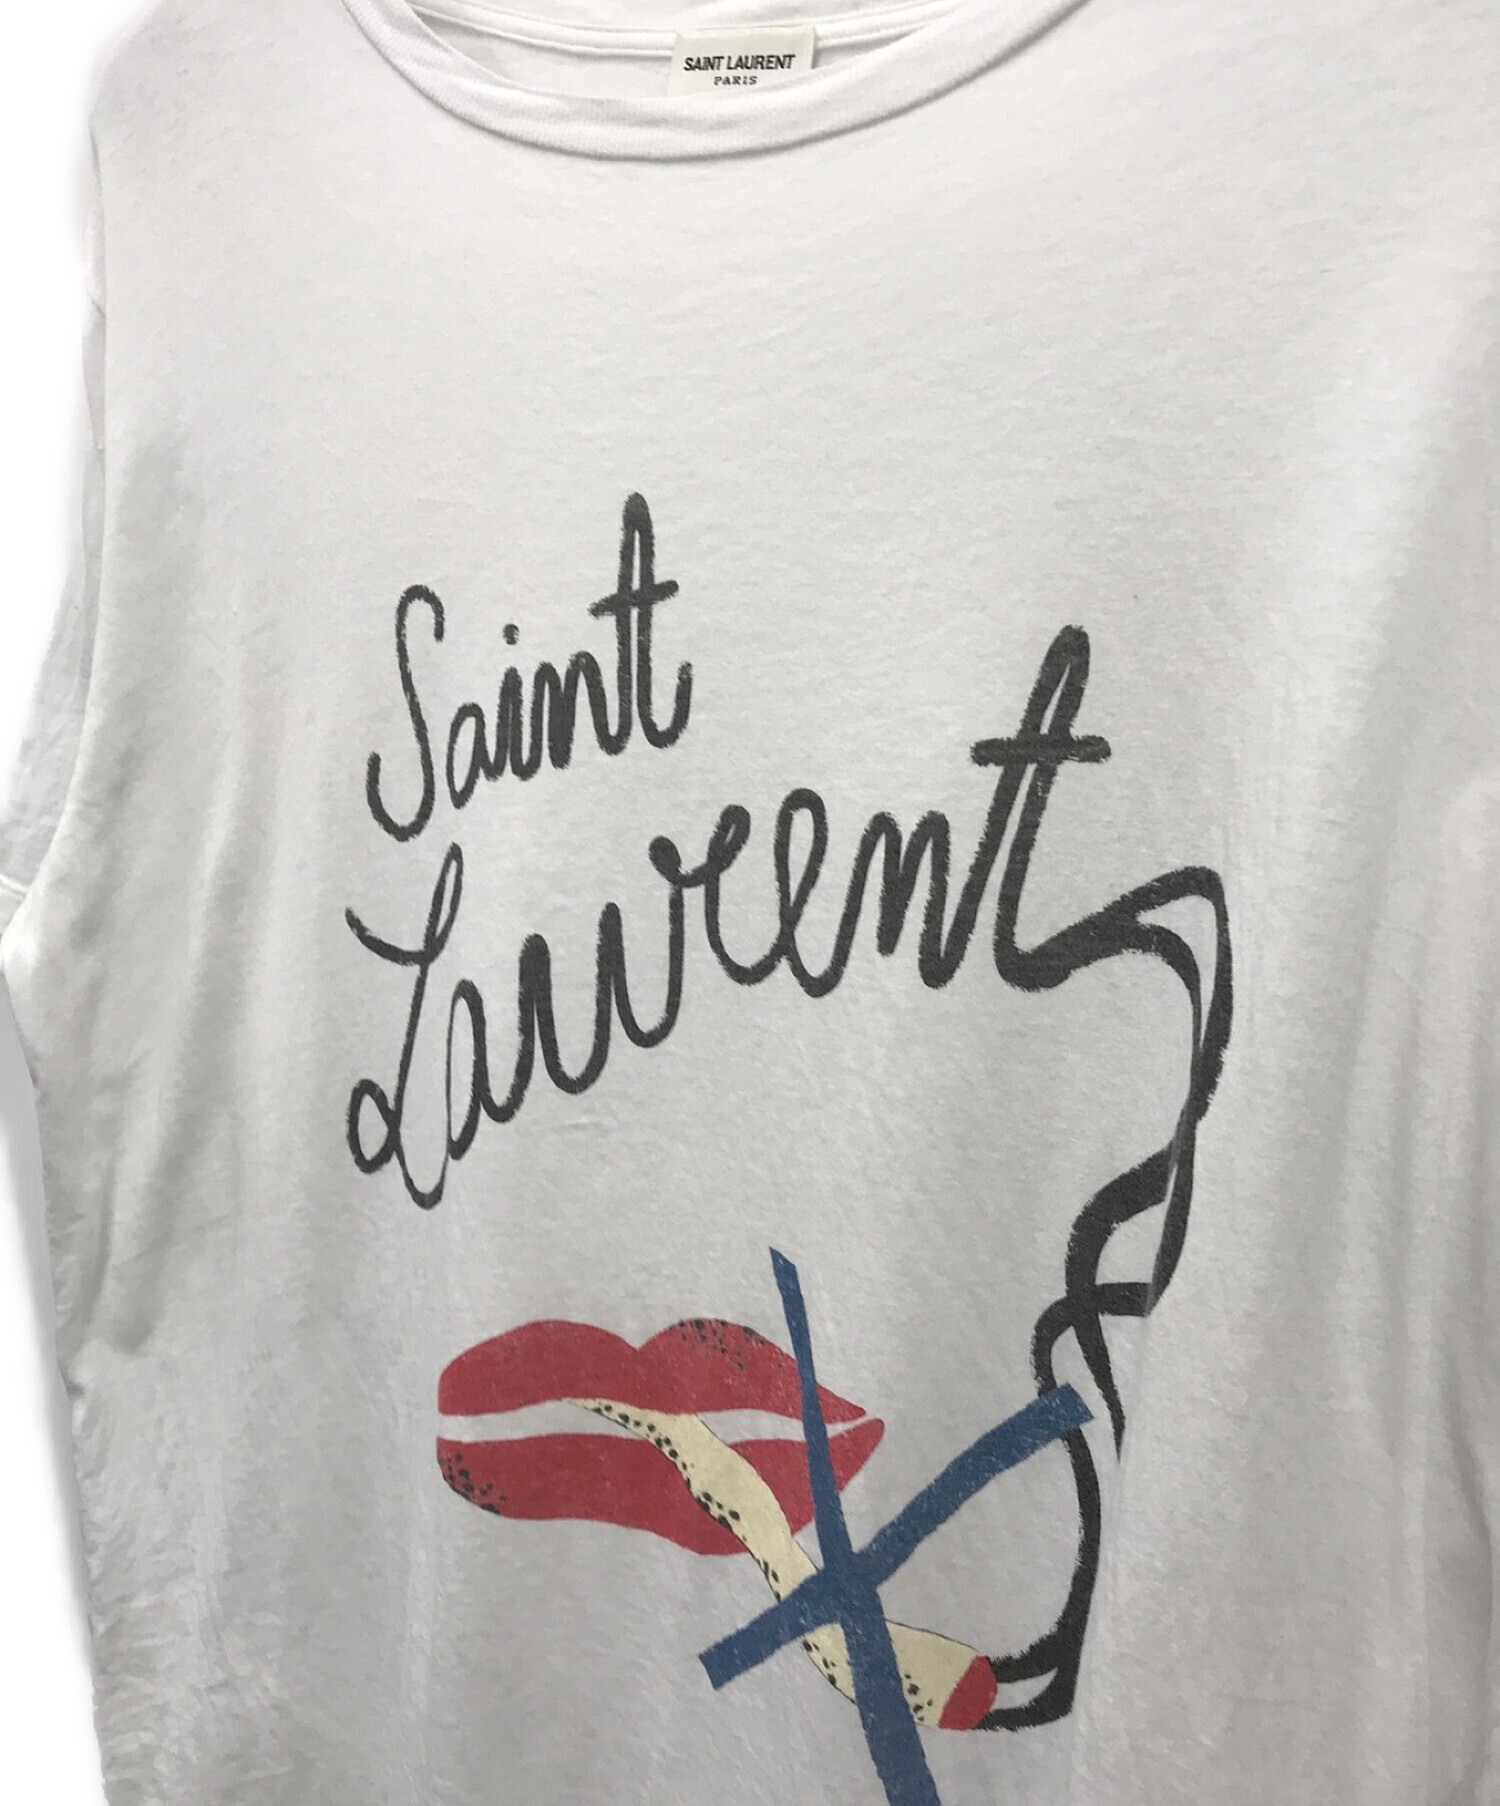 Saint Laurent Paris (サンローランパリ) リップシガーノースモーキングTシャツ ホワイト サイズ:S